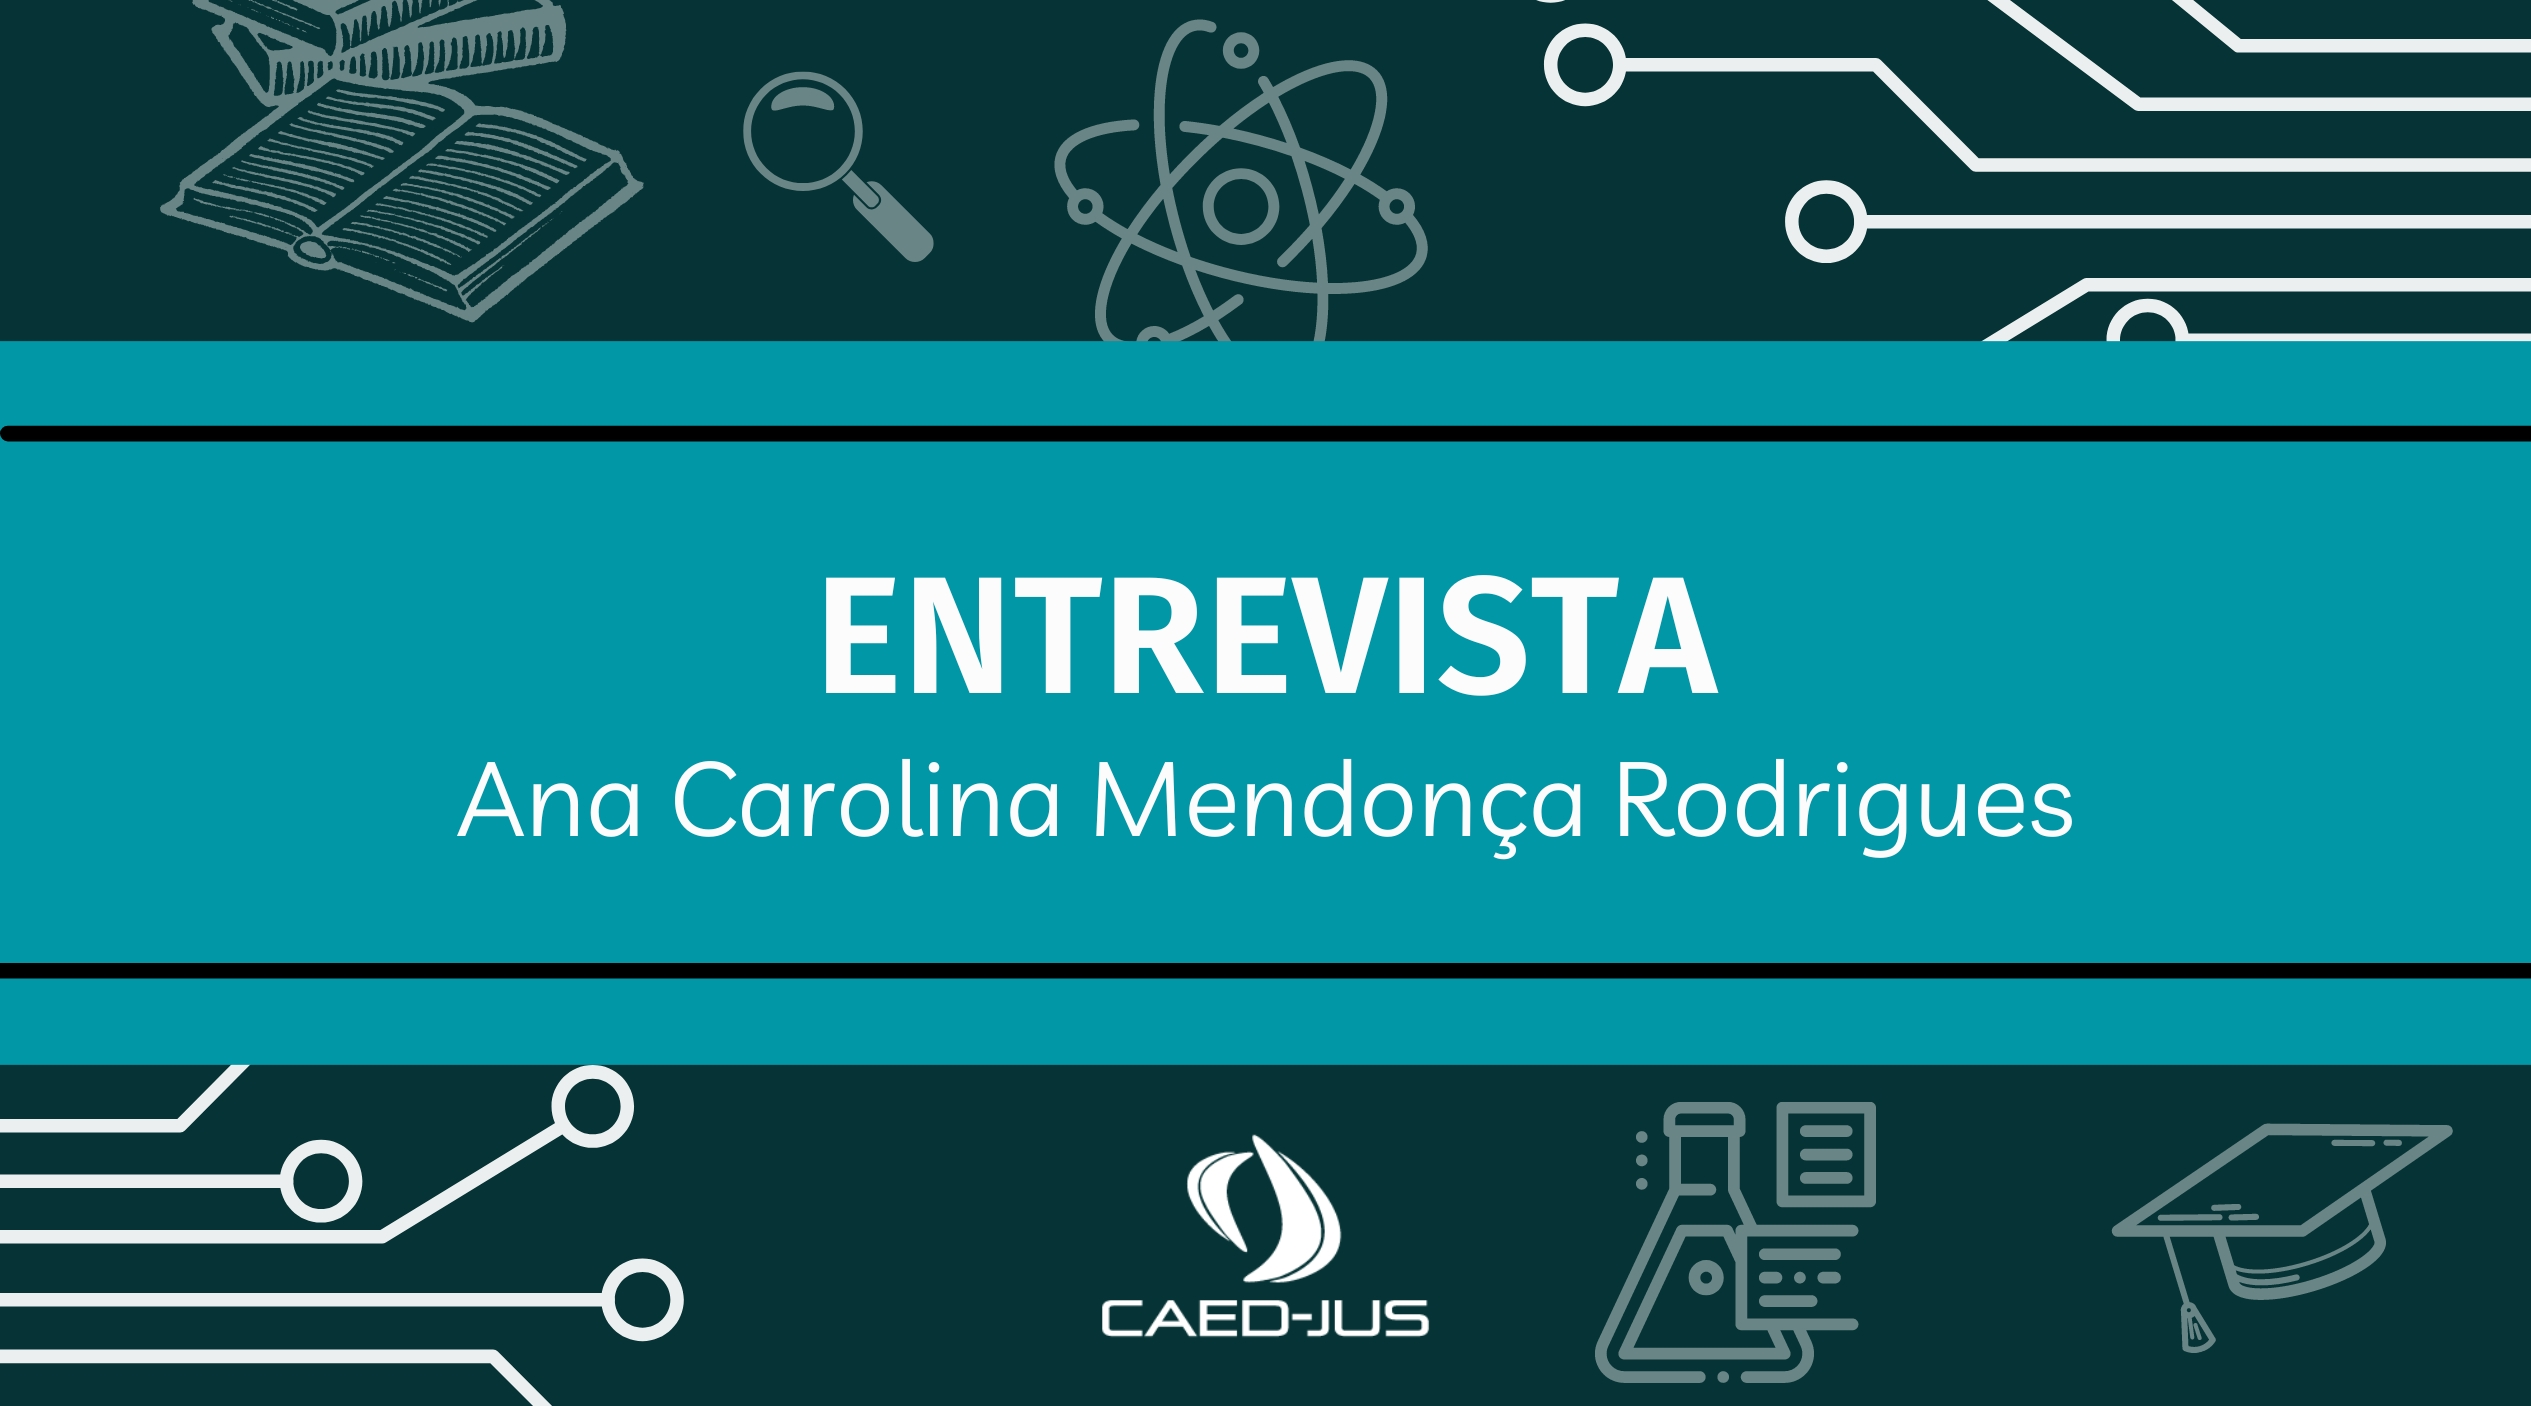 Entrevista-Ana-Carolina-Mendonca-Rodrigues-1 (1)